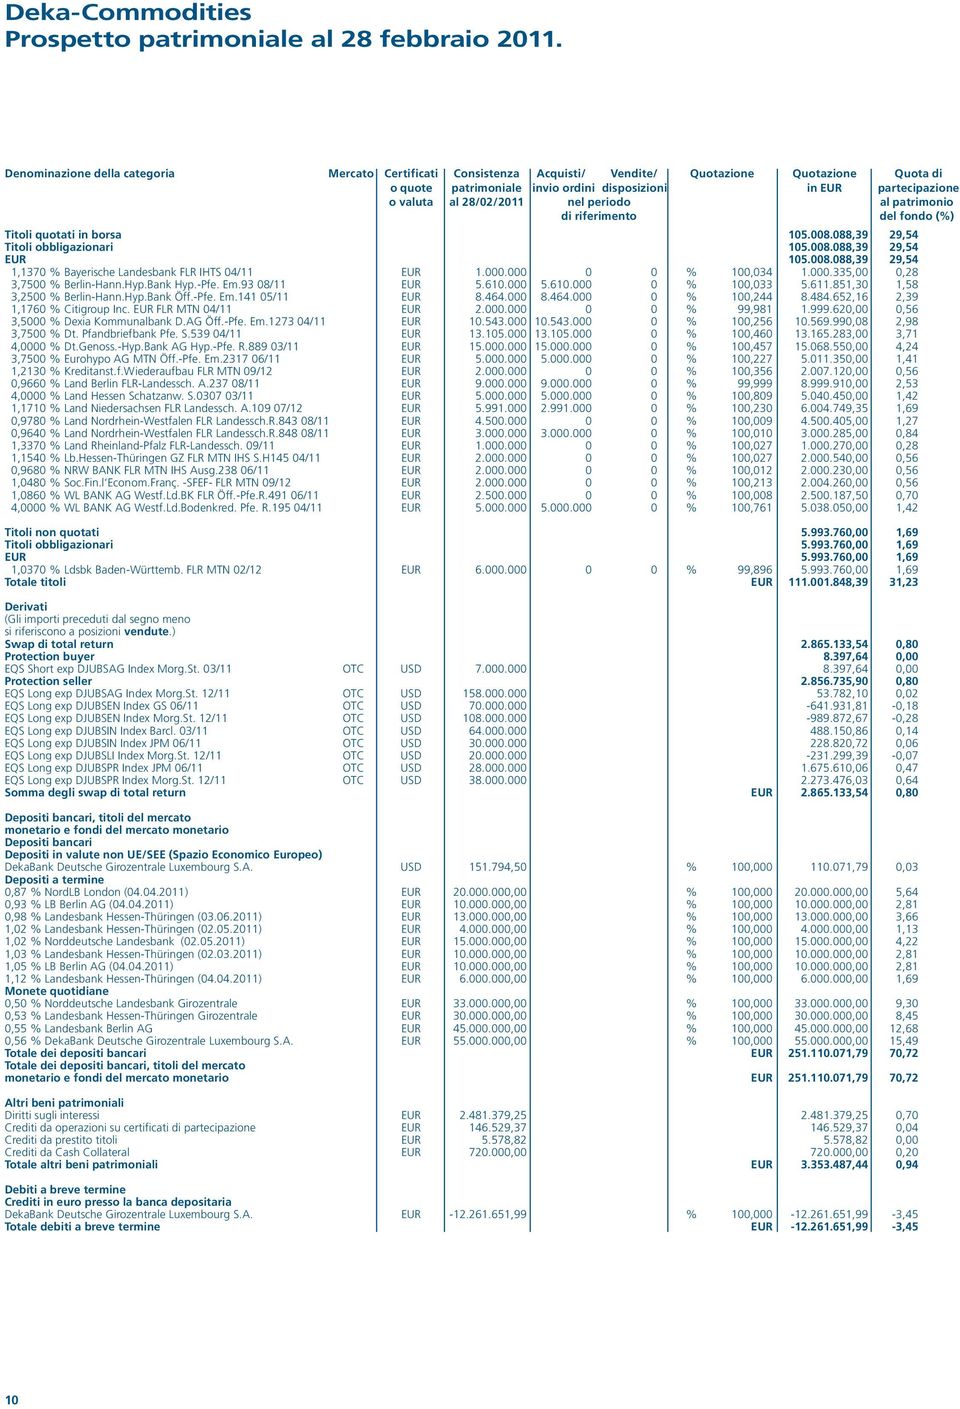 28/02/2011 nel periodo al patrimonio di riferimento del fondo (%) Titoli quotati in borsa 105.008.088,39 29,54 Titoli obbligazionari 105.008.088,39 29,54 EUR 105.008.088,39 29,54 1,1370 % Bayerische Landesbank FLR IHTS 04/11 EUR 1.